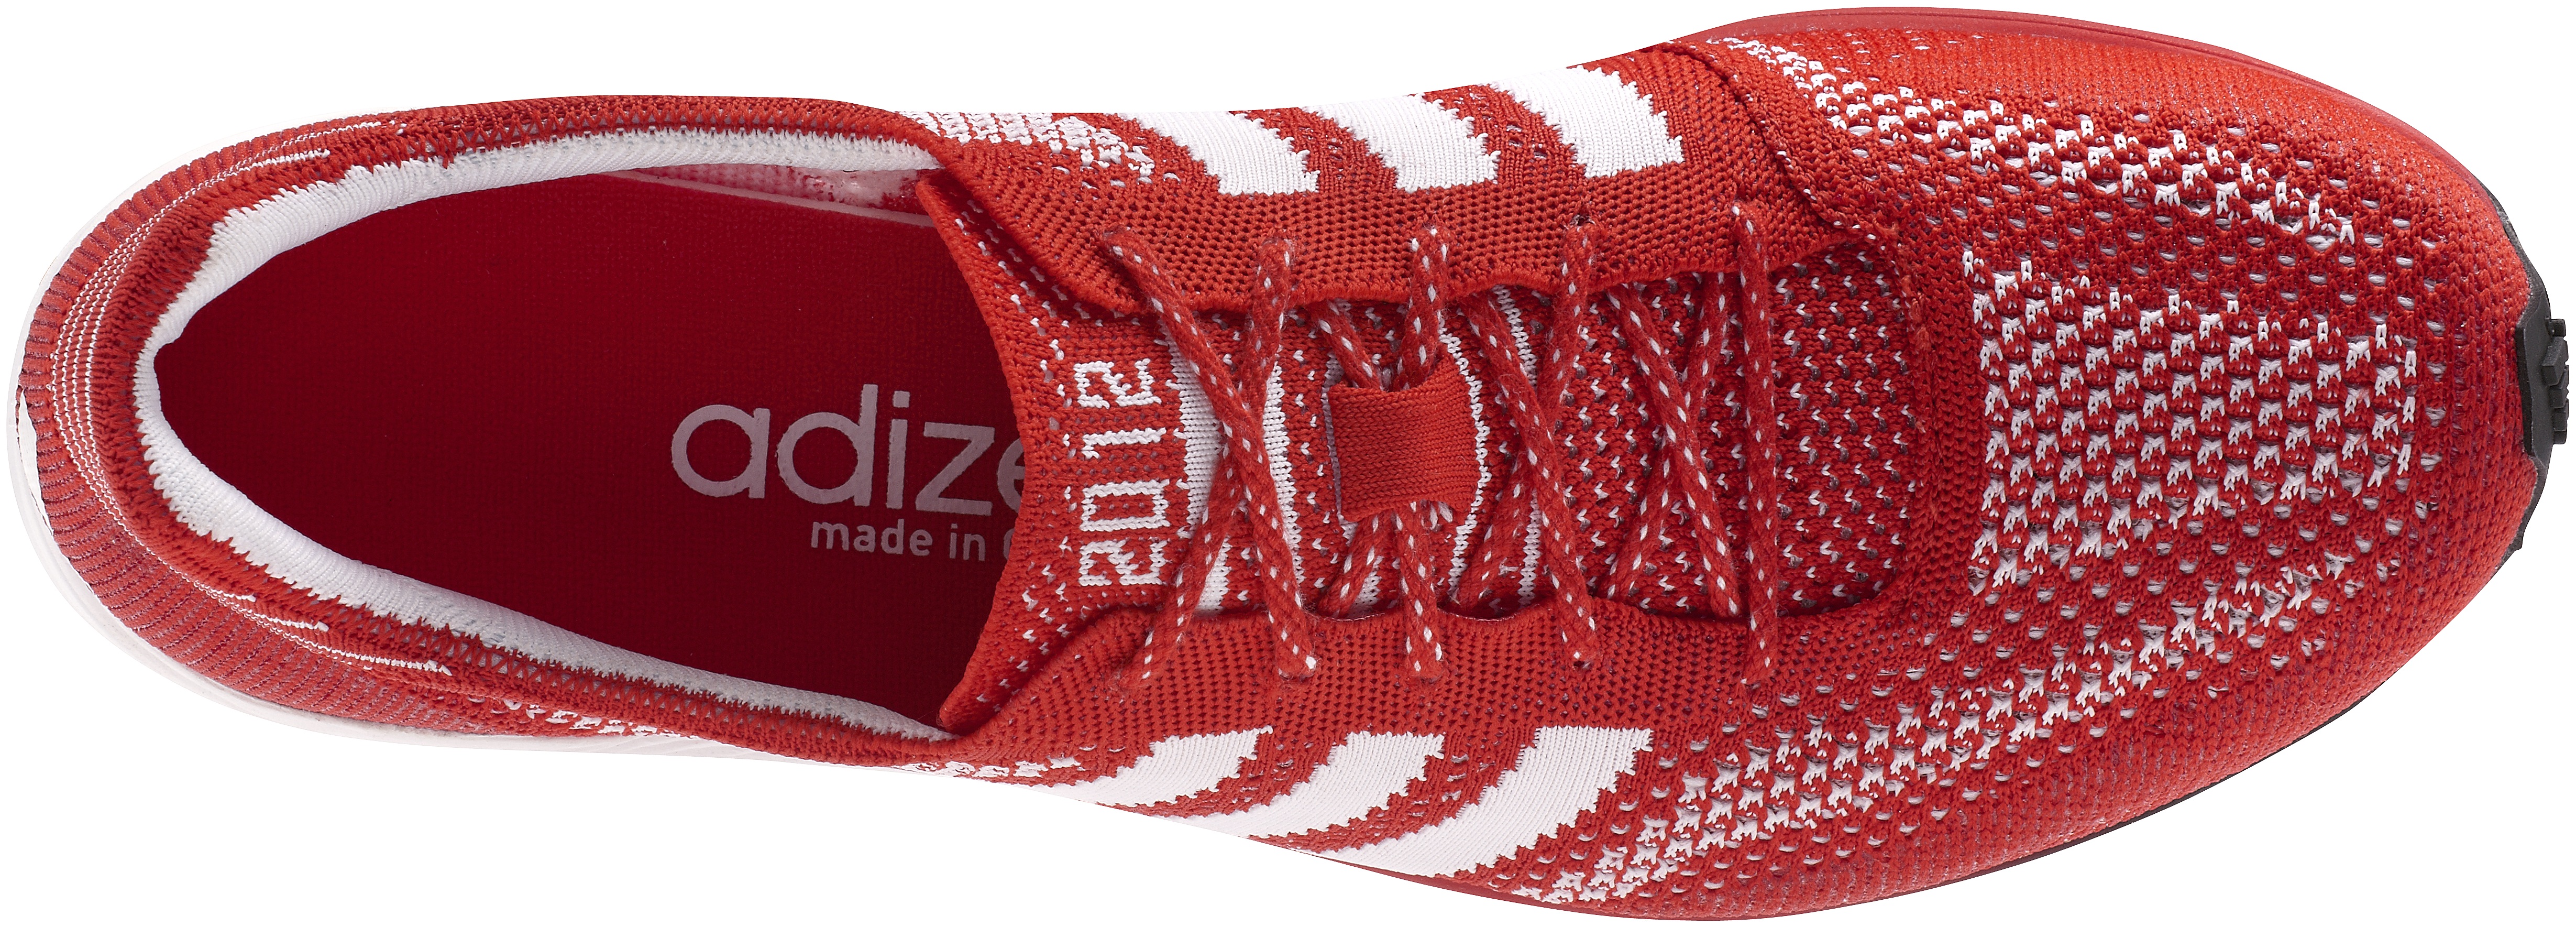 Adidas unveils Primeknit shoe